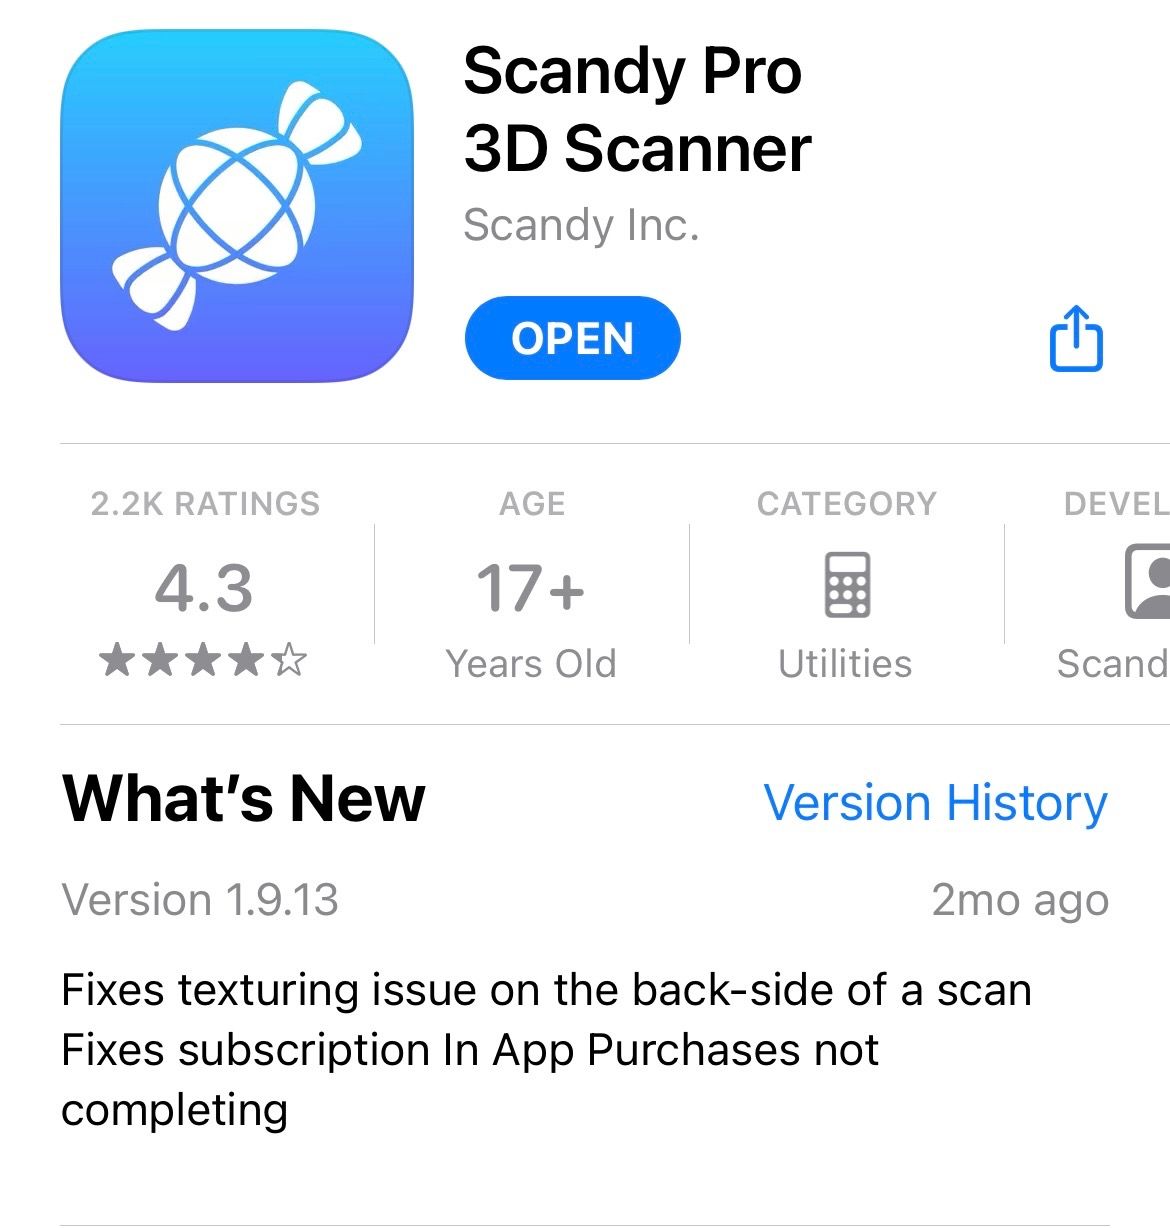 STEP 2: Download the Scandy Pro 3D Scanner App 